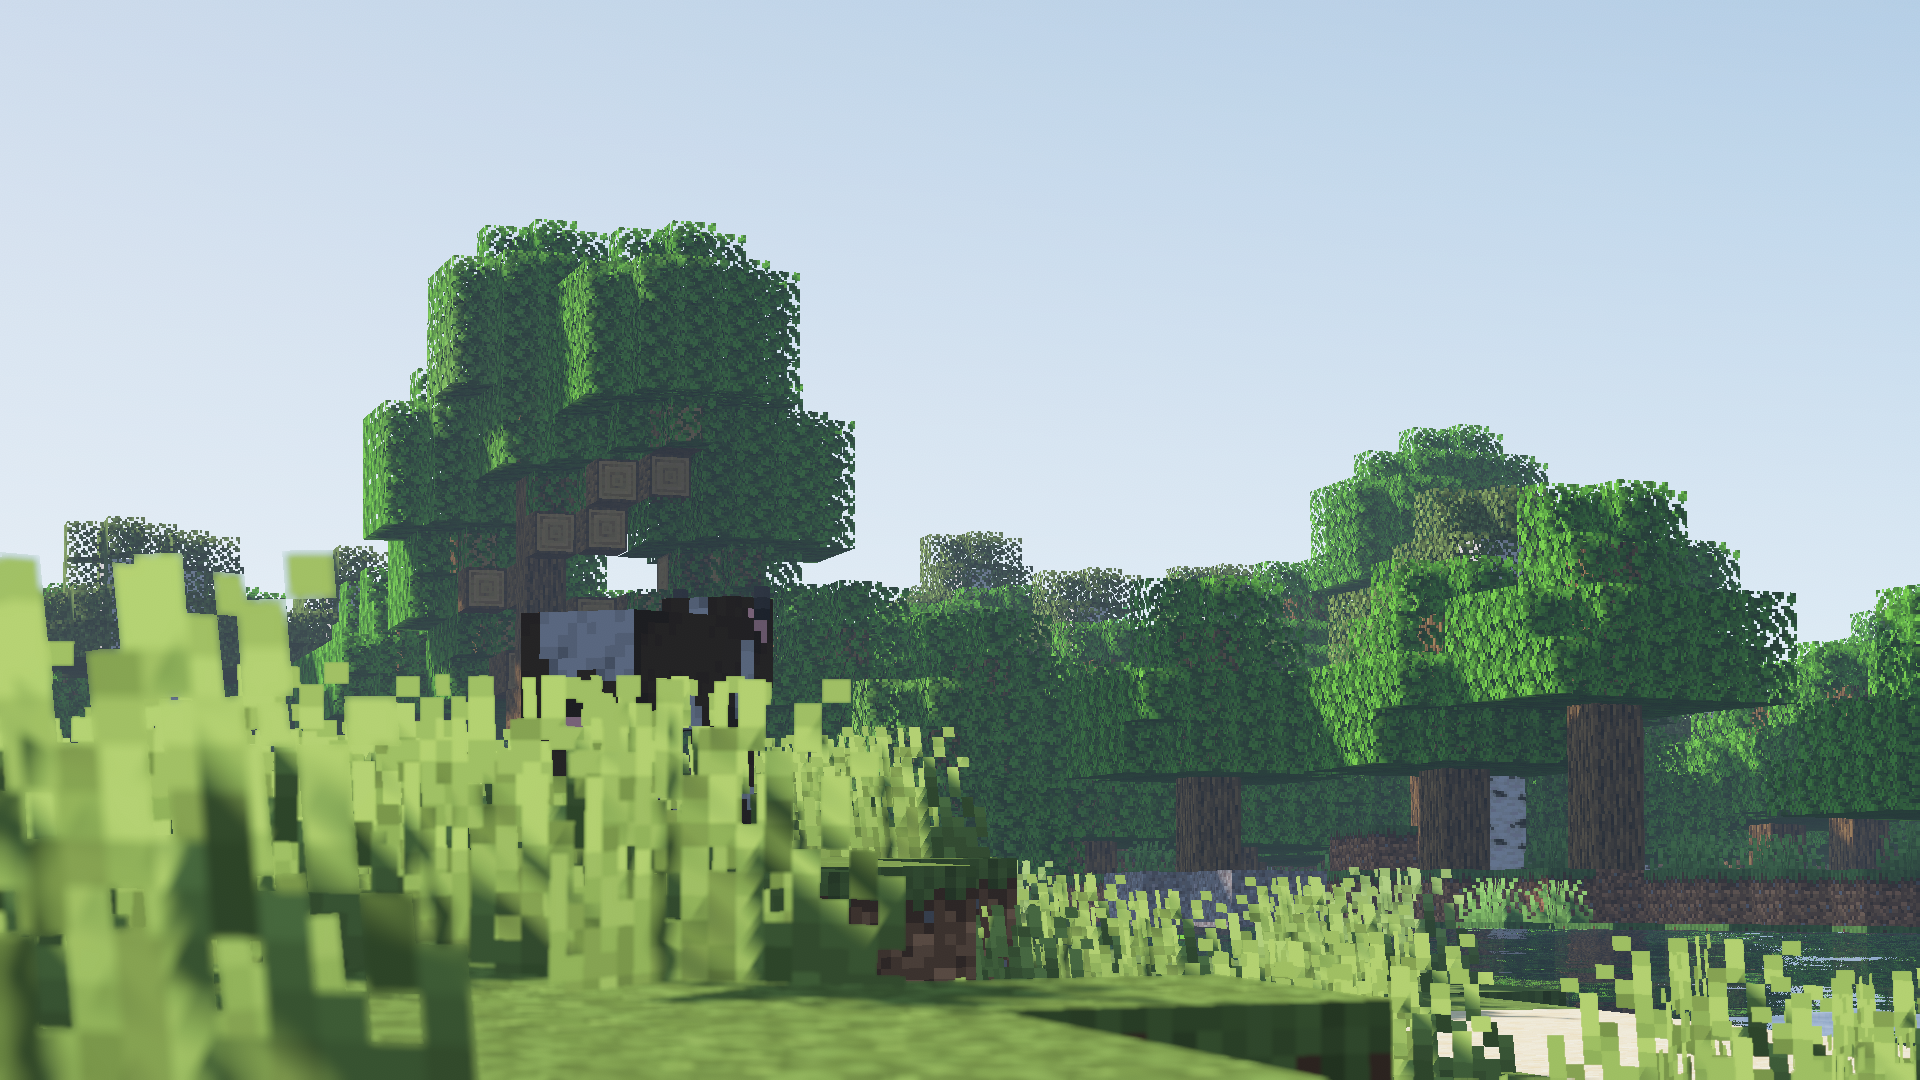 Cây Minecraft, shader, thực vật, rừng và bầu trời đều là những yếu tố tạo nên một thế giới Minecraft thú vị và đầy màu sắc. Khám phá và đắm mình trong cảnh vật của Minecraft, để cảm nhận được sự khác biệt mà các yếu tố này mang lại cho trò chơi Minecraft.